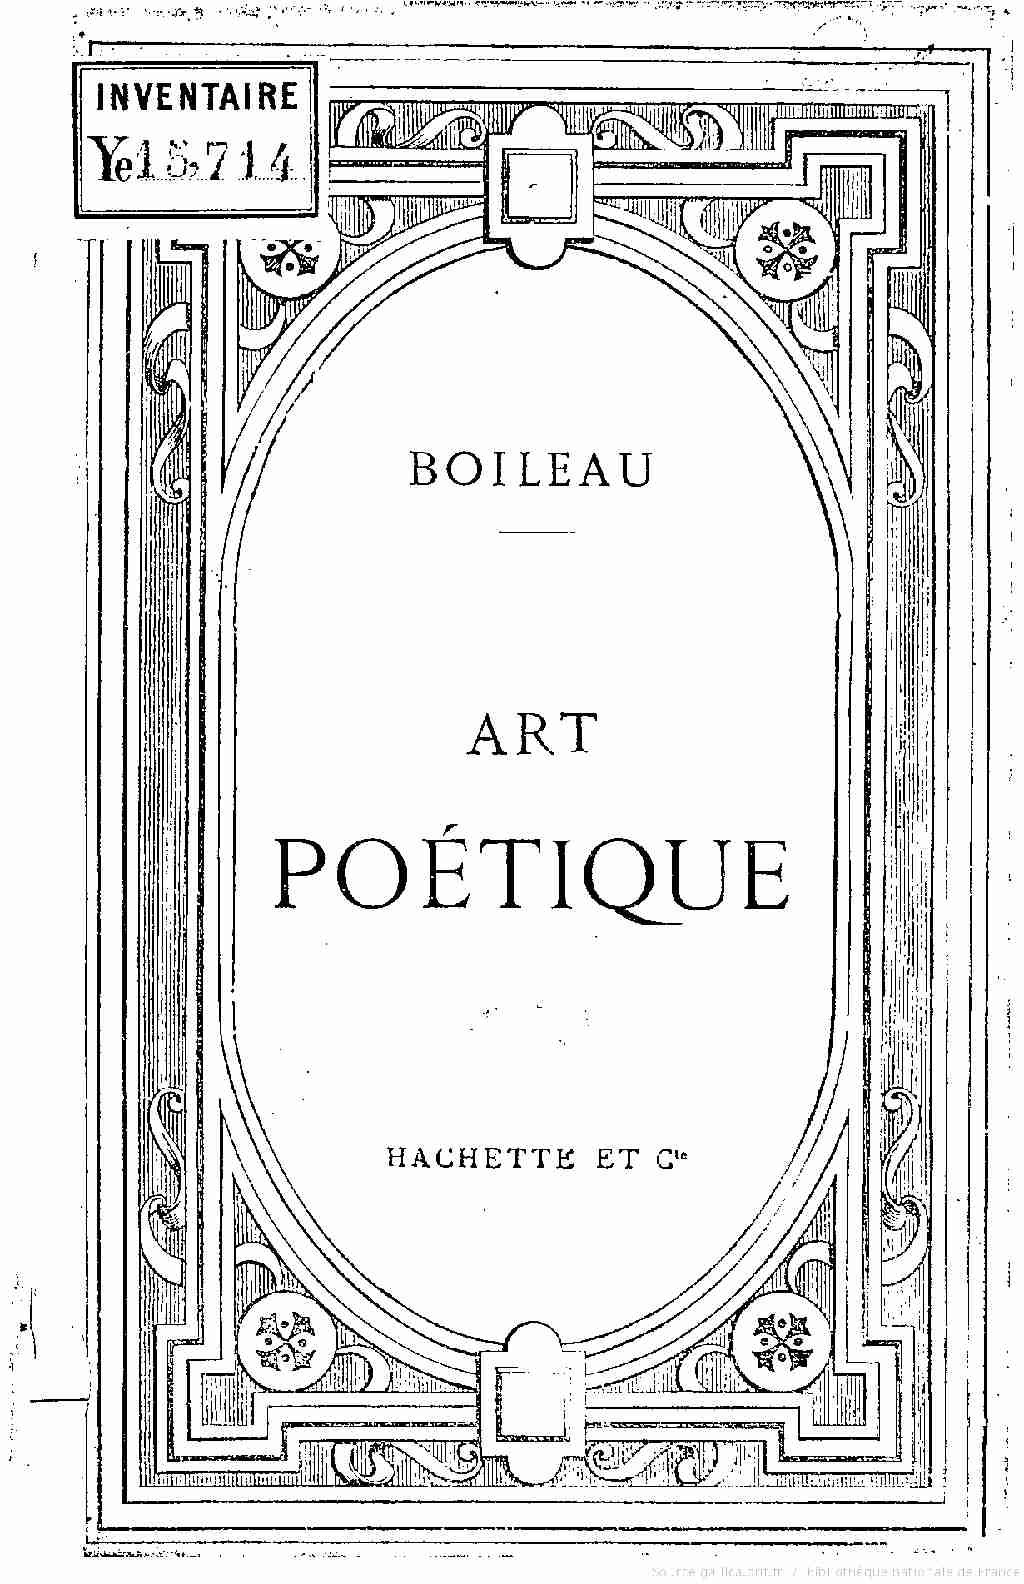 [PDF] Art poétique de Boileau / [Nicolas Boileau] - Free